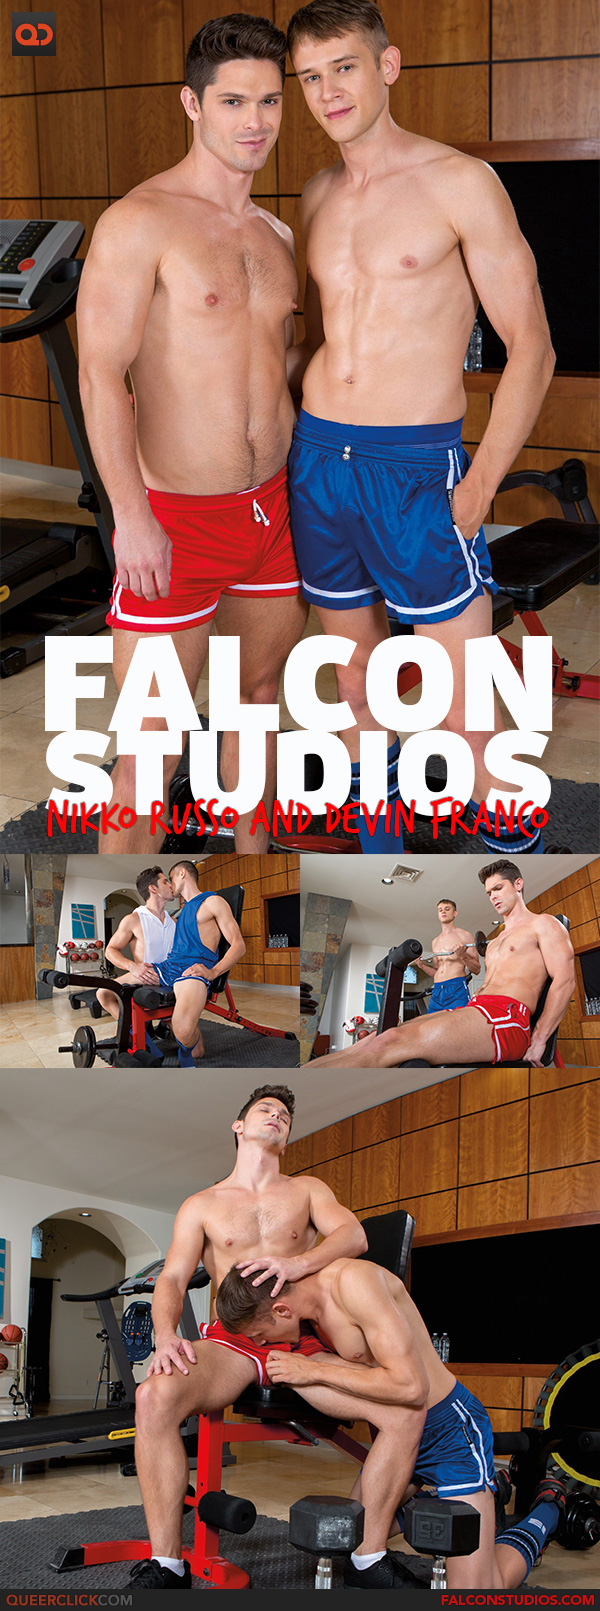 Falcon Studios/Hot House: Nikko Russo and Devin Franco